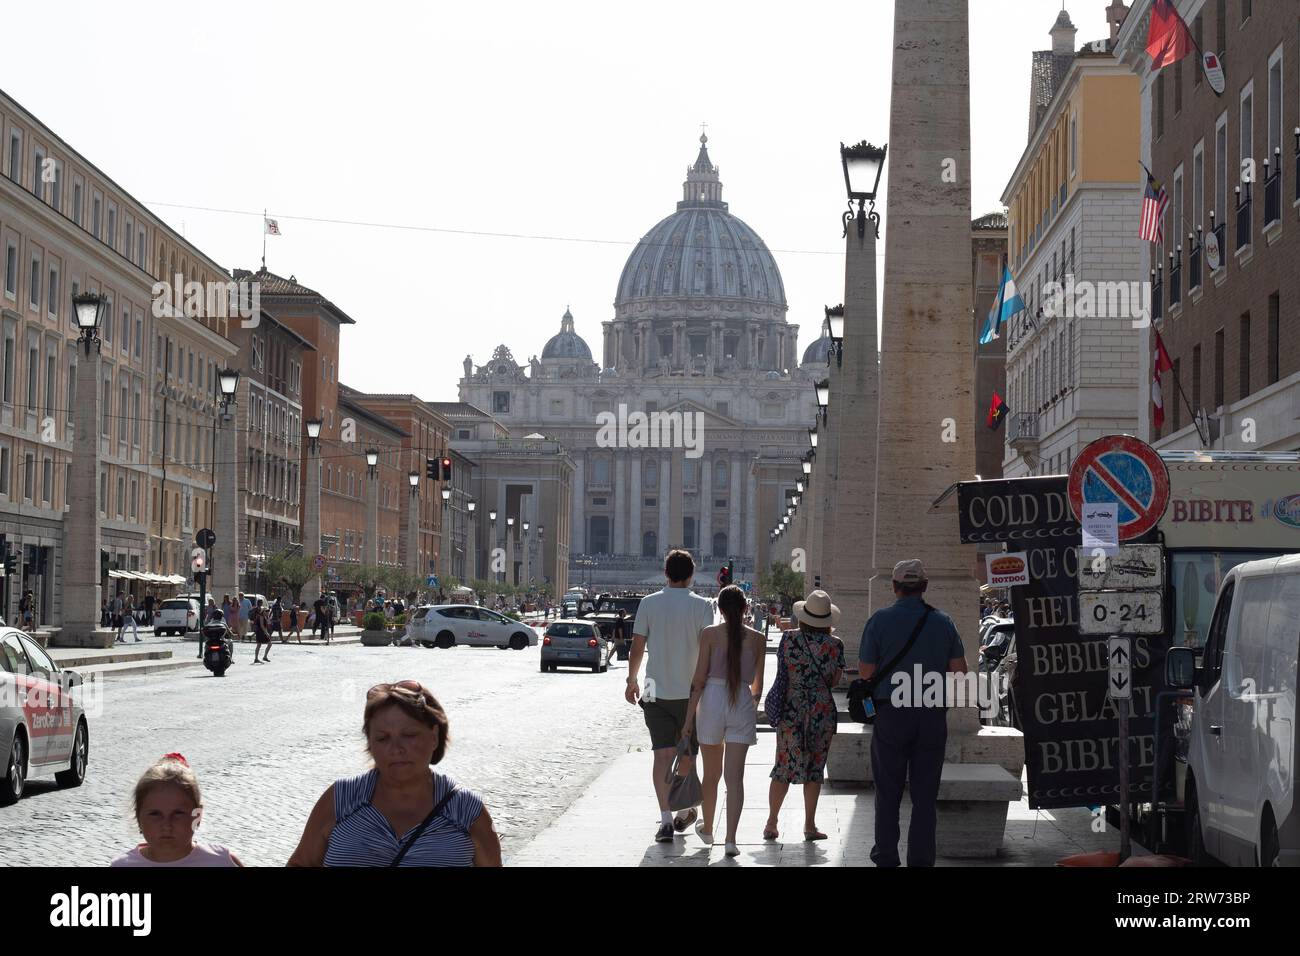 basilica di San pietro in estate con molti turisti che visitano la zona Foto Stock